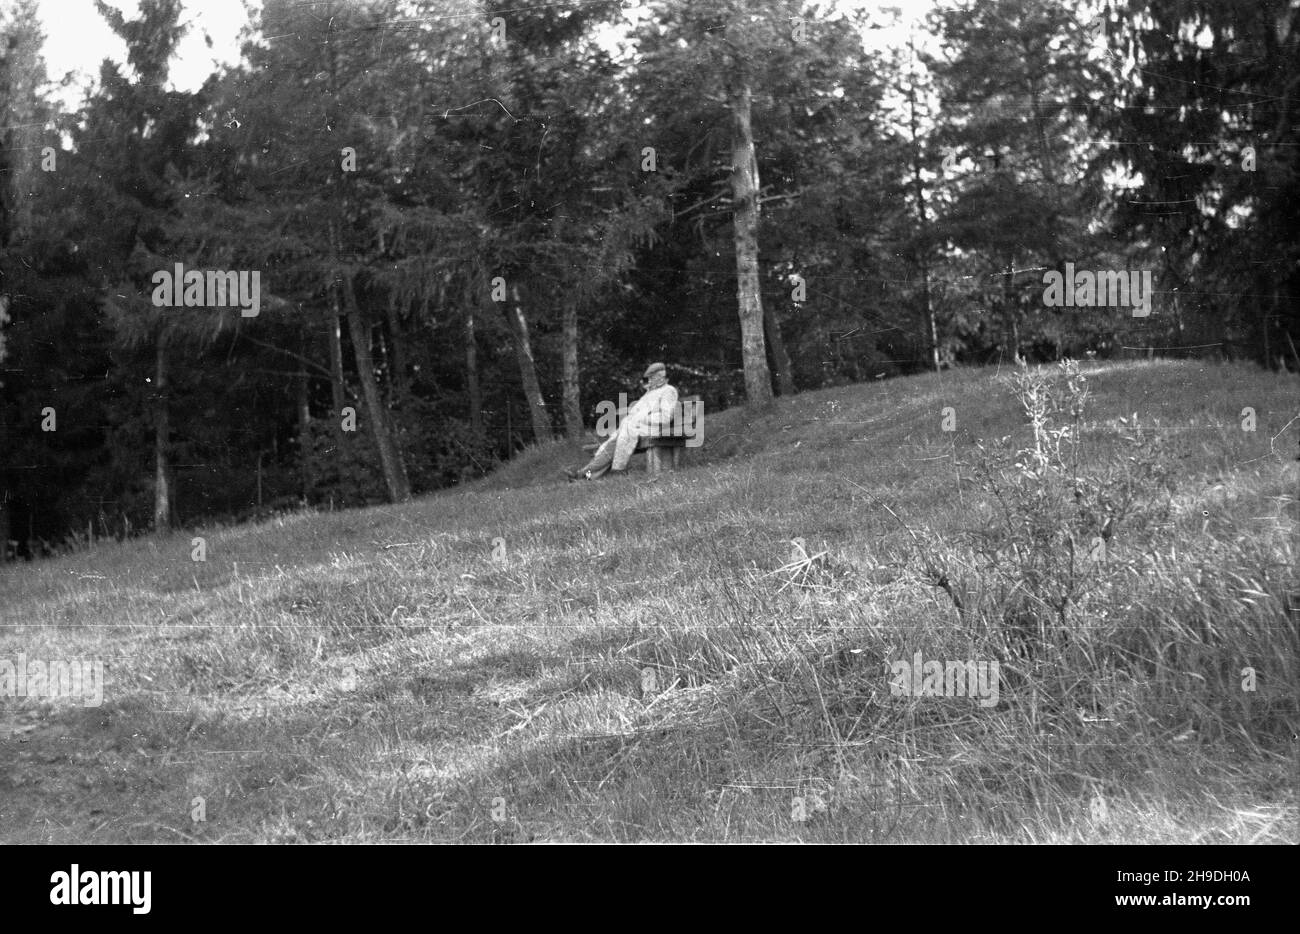 Bielawa, 1947-10.Mê¿czyzna odpoczywa na ³awce W parku. ps/gr PAP Dok³adny dzieñ wydarzenia nieustalony.Bielawa, 1947 octobre.Un homme qui se repose dans un parc. ps/gr PAP Banque D'Images